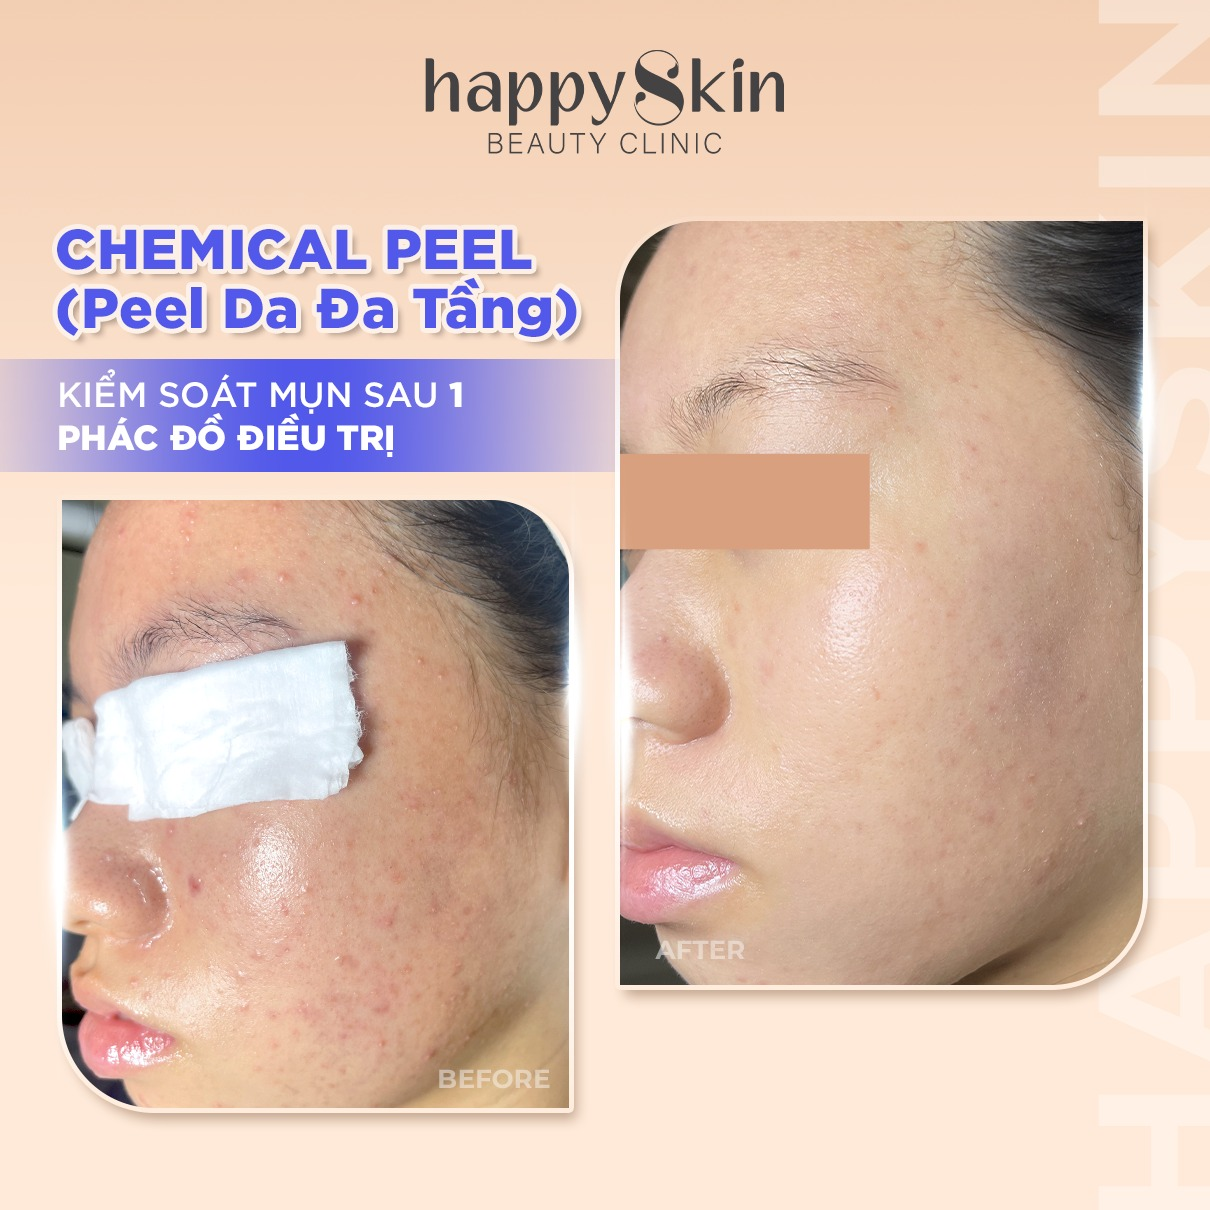 Hiệu quả sau khi sử dụng liệu trình peel da đa tầng tại HappySkin Beauty Clinic